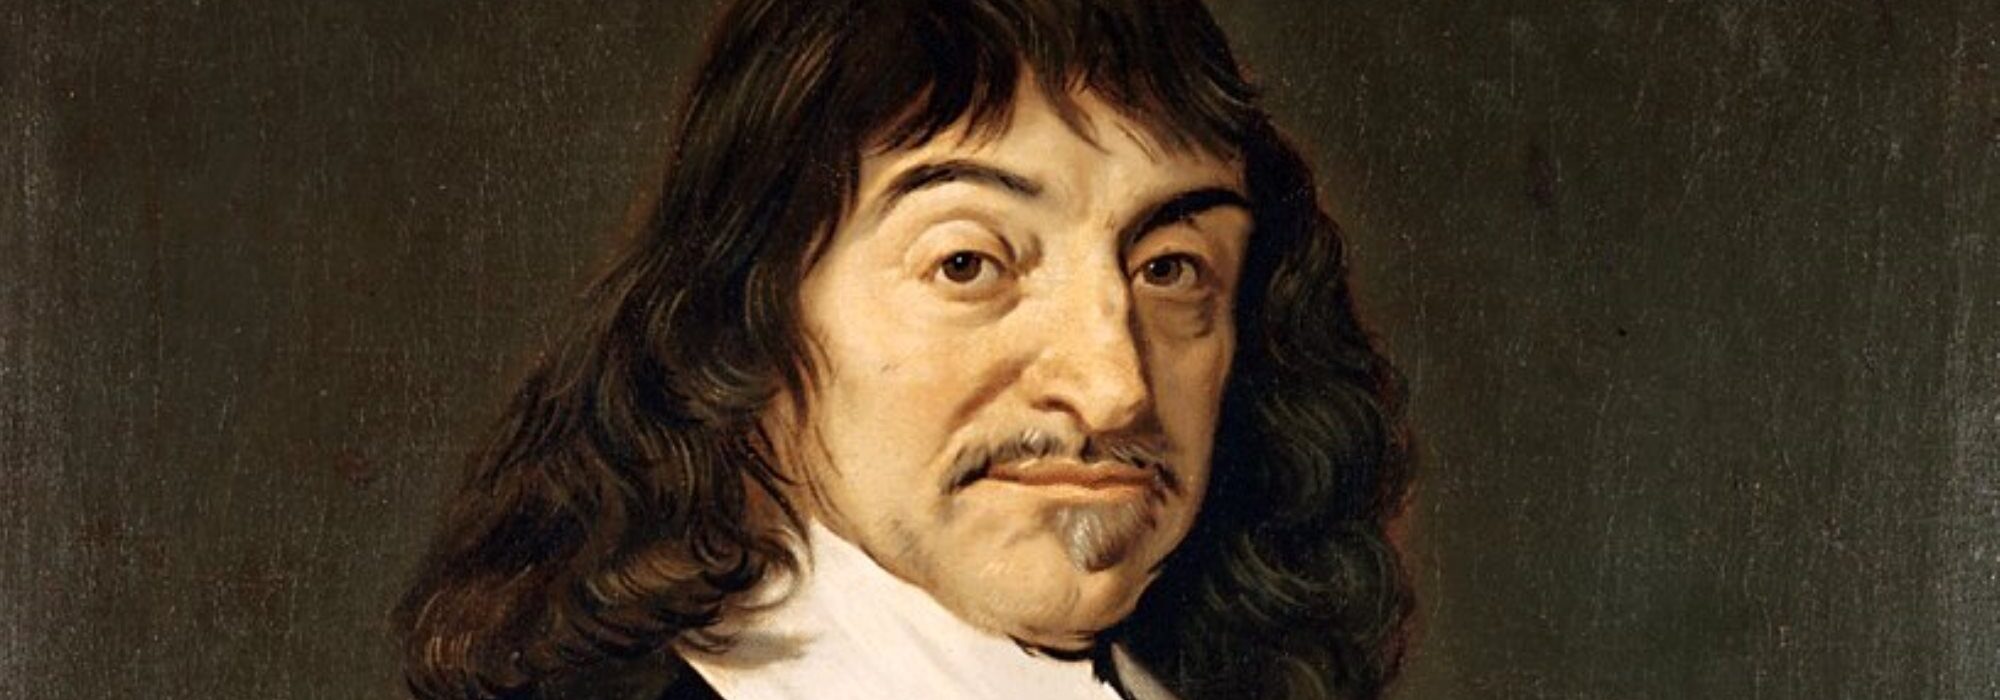 Imagem: Retrato de Descartes (Frans Hals, 1649)